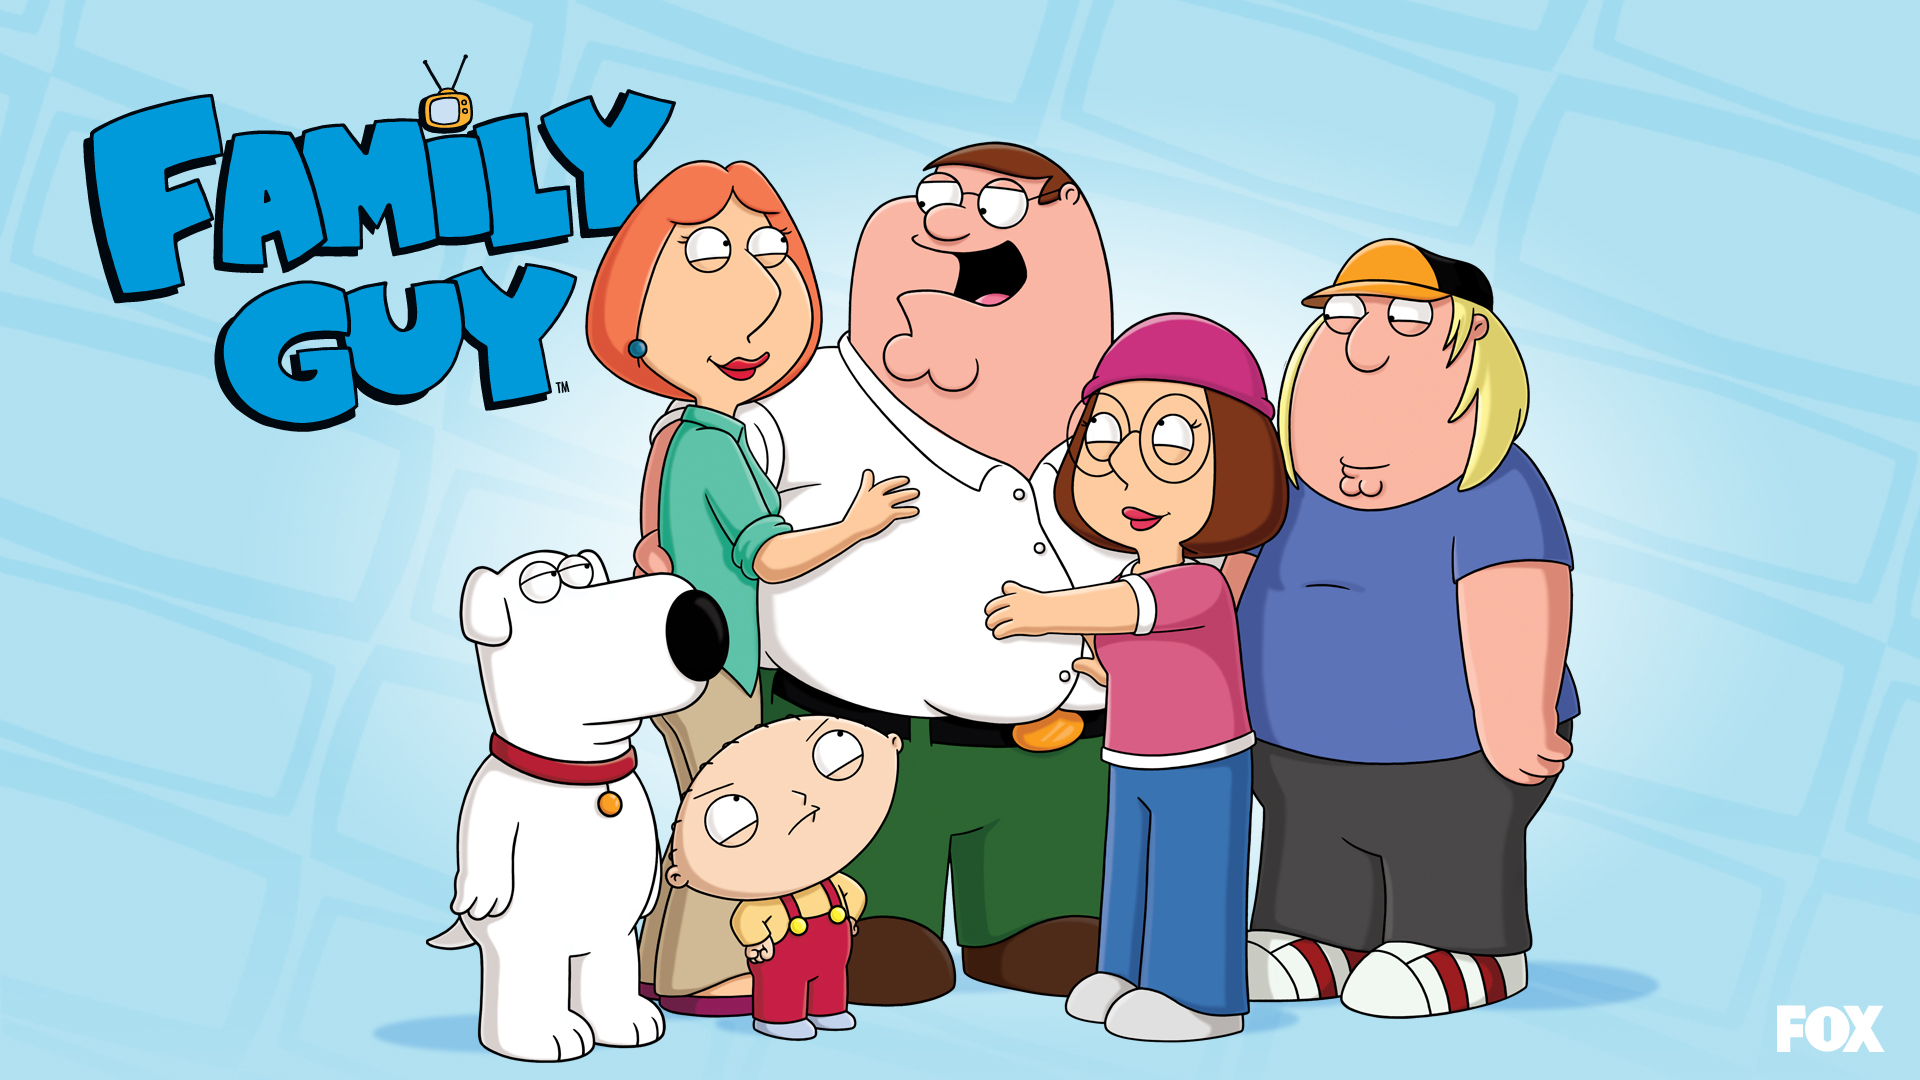 Family Guy Wallpaper For Your Desktop